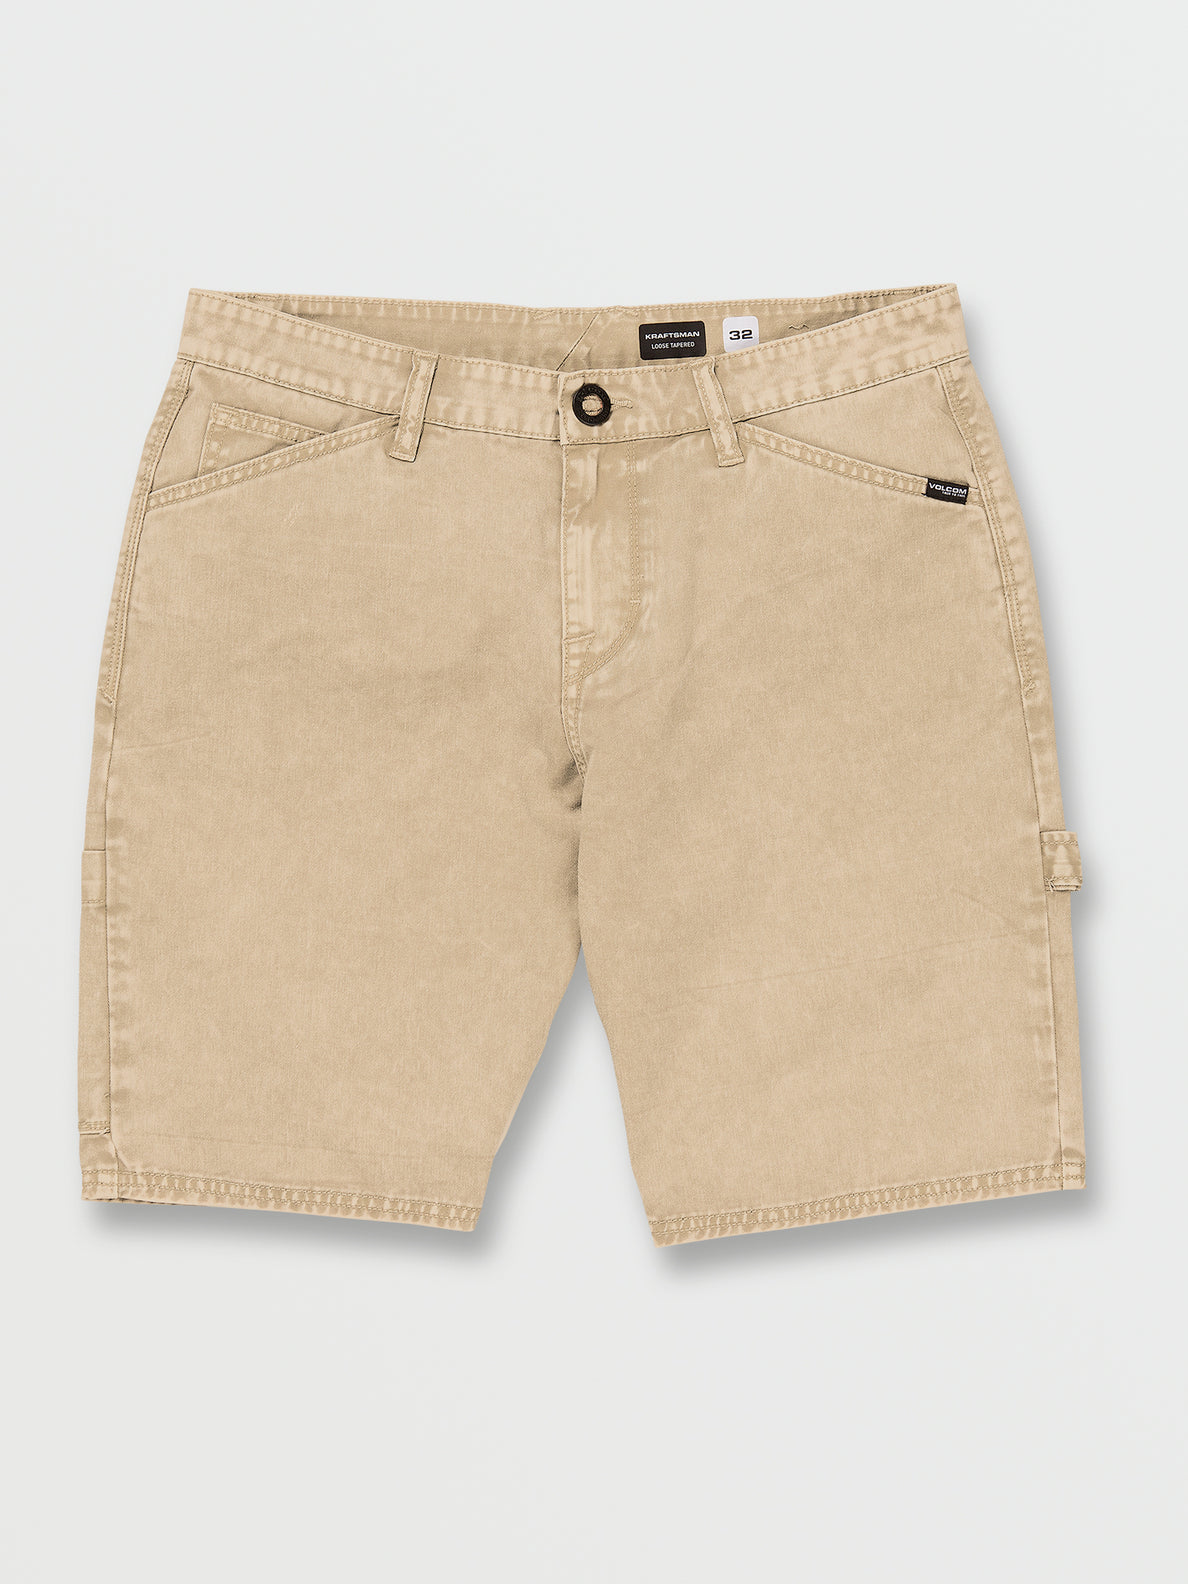 Kraftsman Denim Shorts - Almond – Volcom US